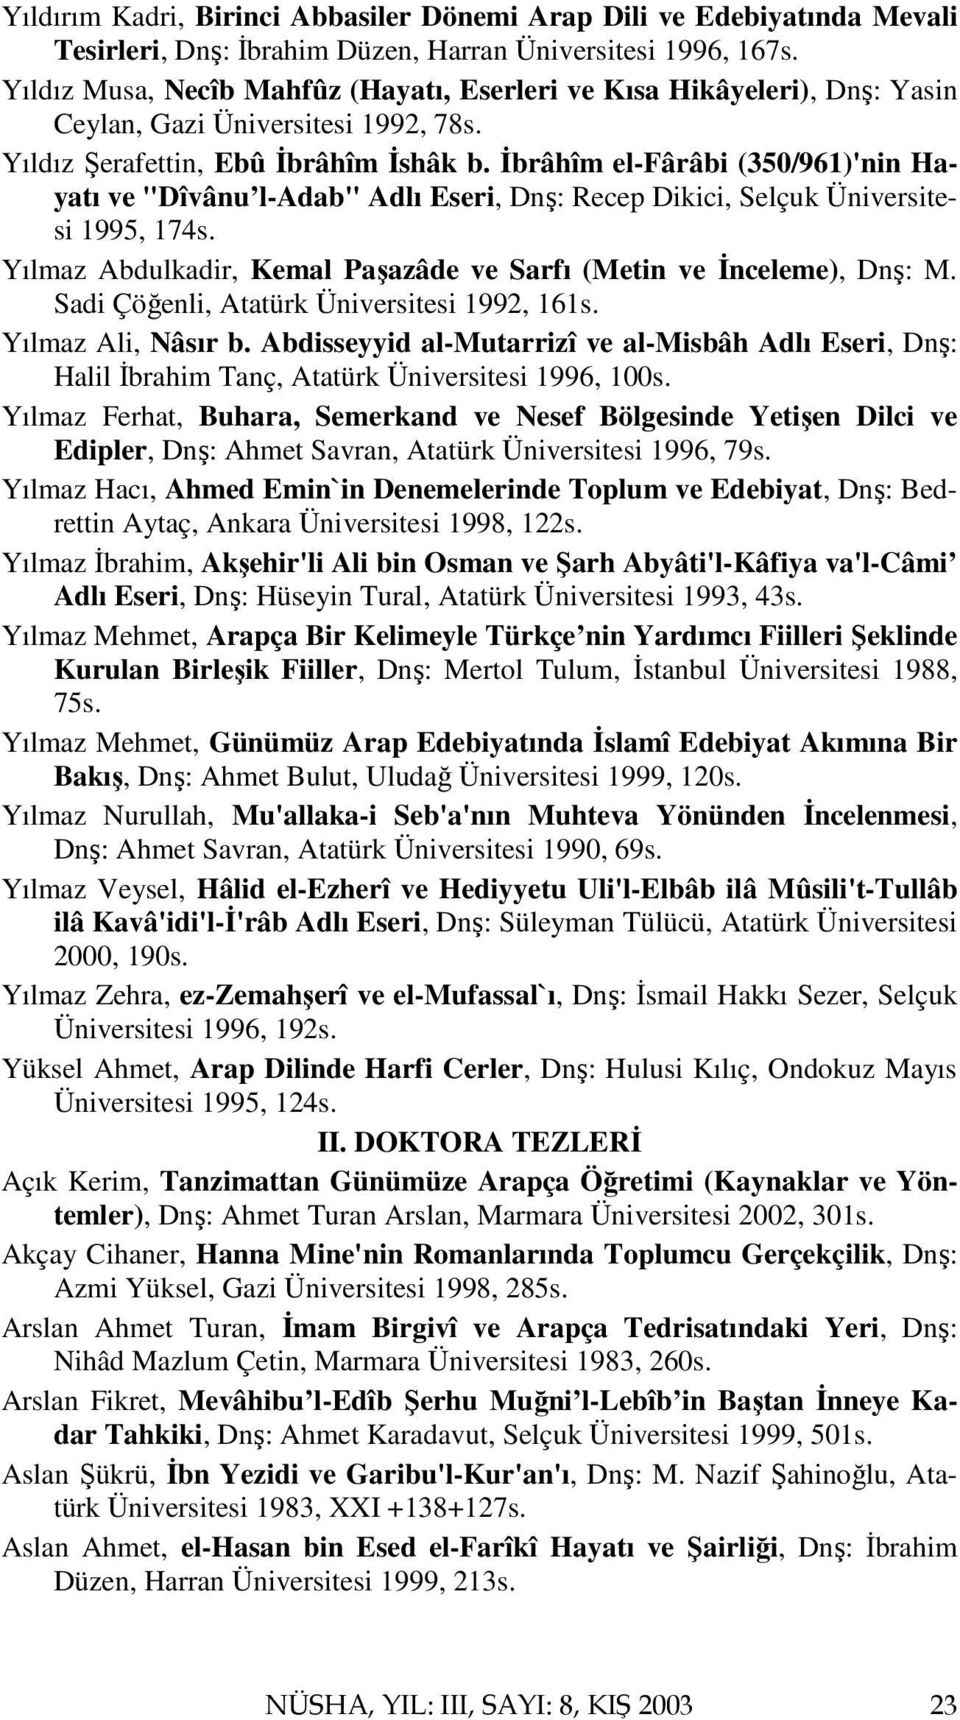 İbrâhîm el-fârâbi (350/961)'nin Hayatı ve "Dîvânu l-adab" Adlı Eseri, Dnş: Recep Dikici, Selçuk Üniversitesi 1995, 174s. Yılmaz Abdulkadir, Kemal Paşazâde ve Sarfı (Metin ve İnceleme), Dnş: M.